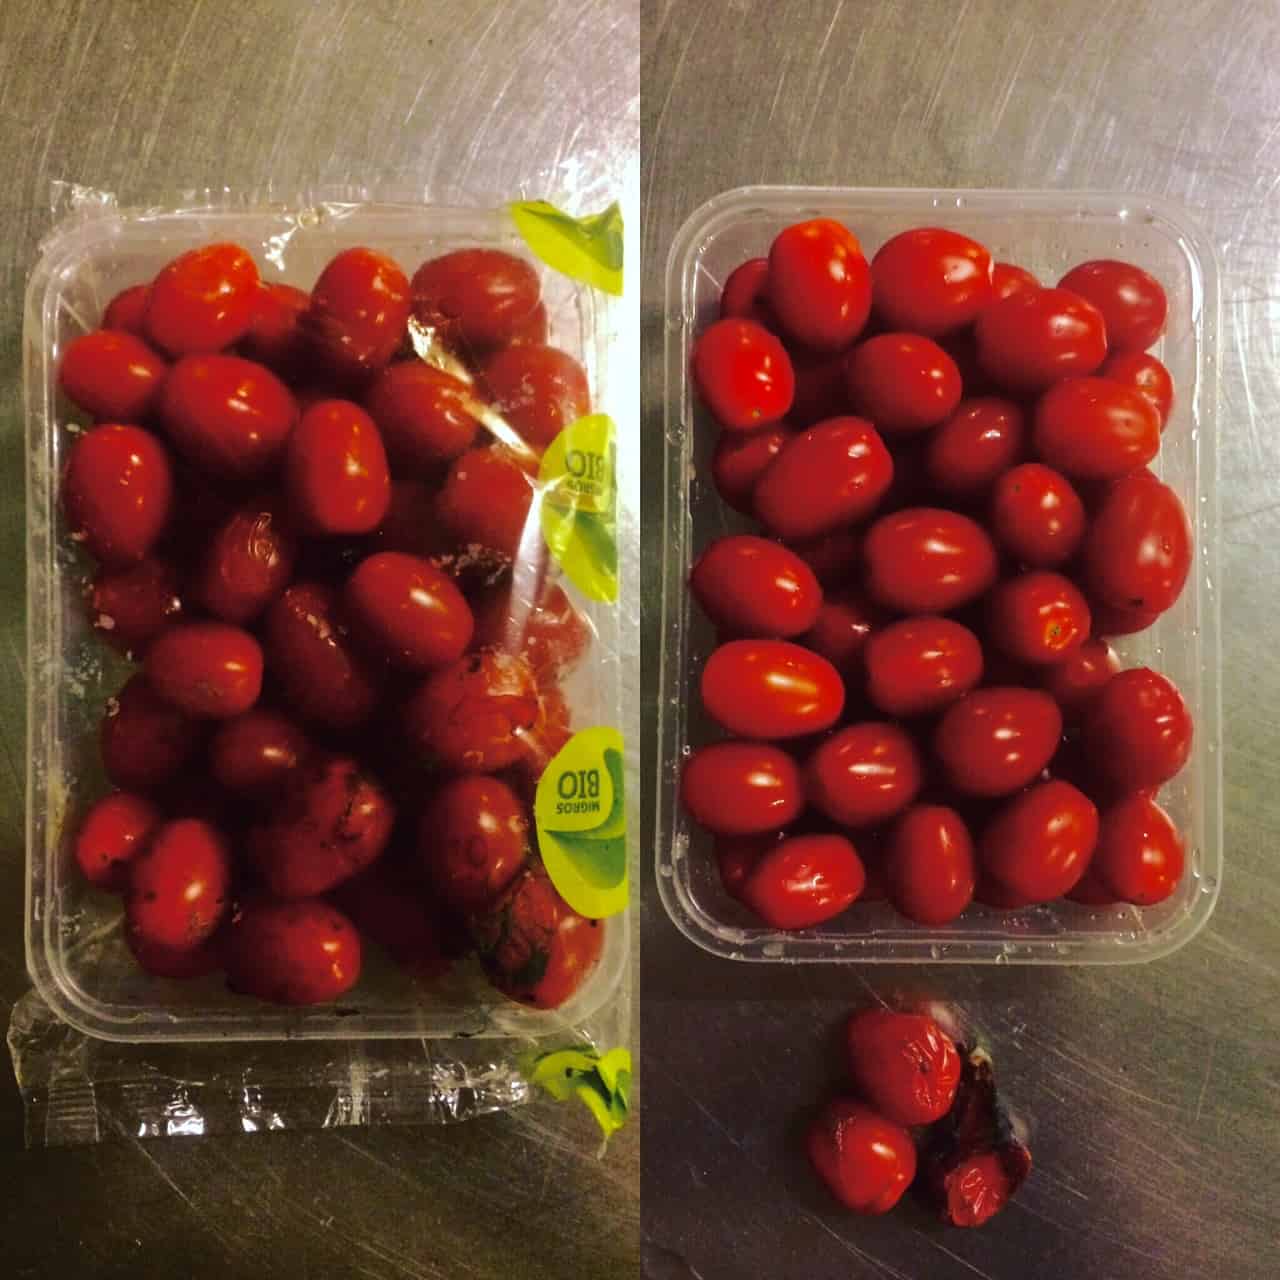 Diese 500g-Packung Cherry-Tomaten hat die Autorin im Müll eines Detailhändlers gefunden. Nach dem aussortieren zeigte sich, dass es lediglich drei Tomätchen waren, die nicht mehr geniessbar waren (Bild: Alex Tiefenbacher).